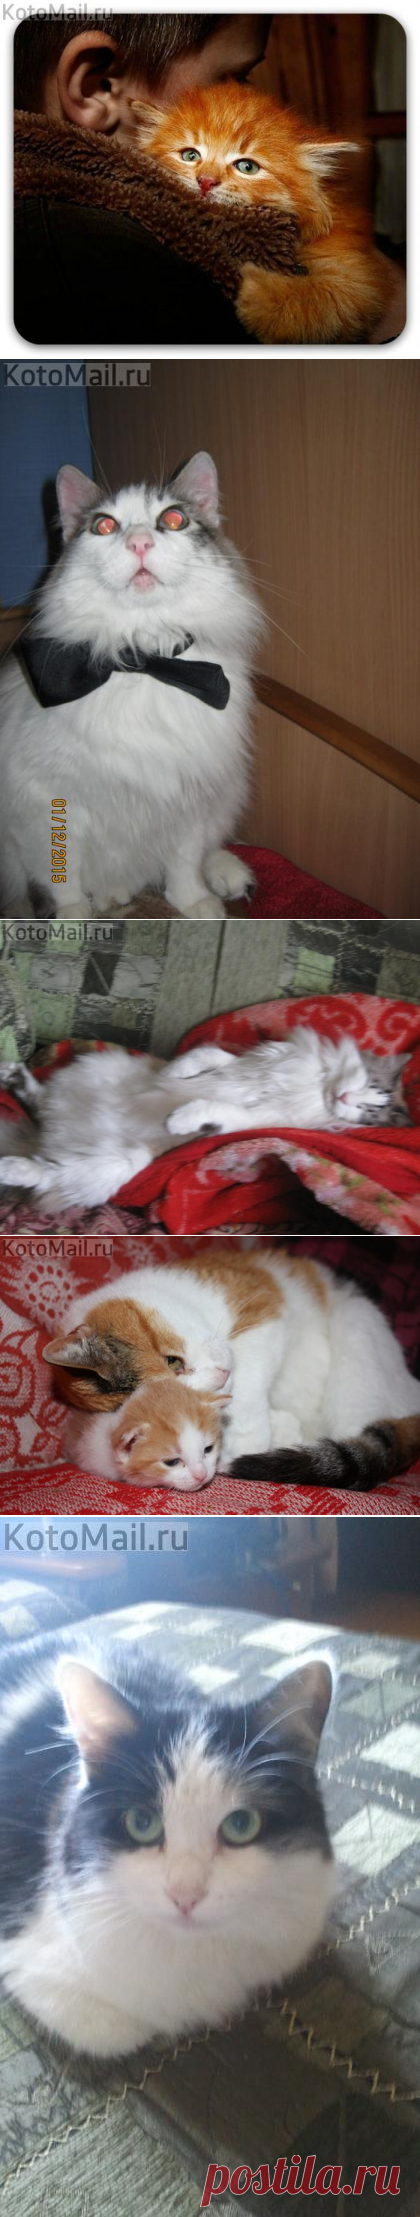 Я самый счастливый в мире кот | KotoMail.ru